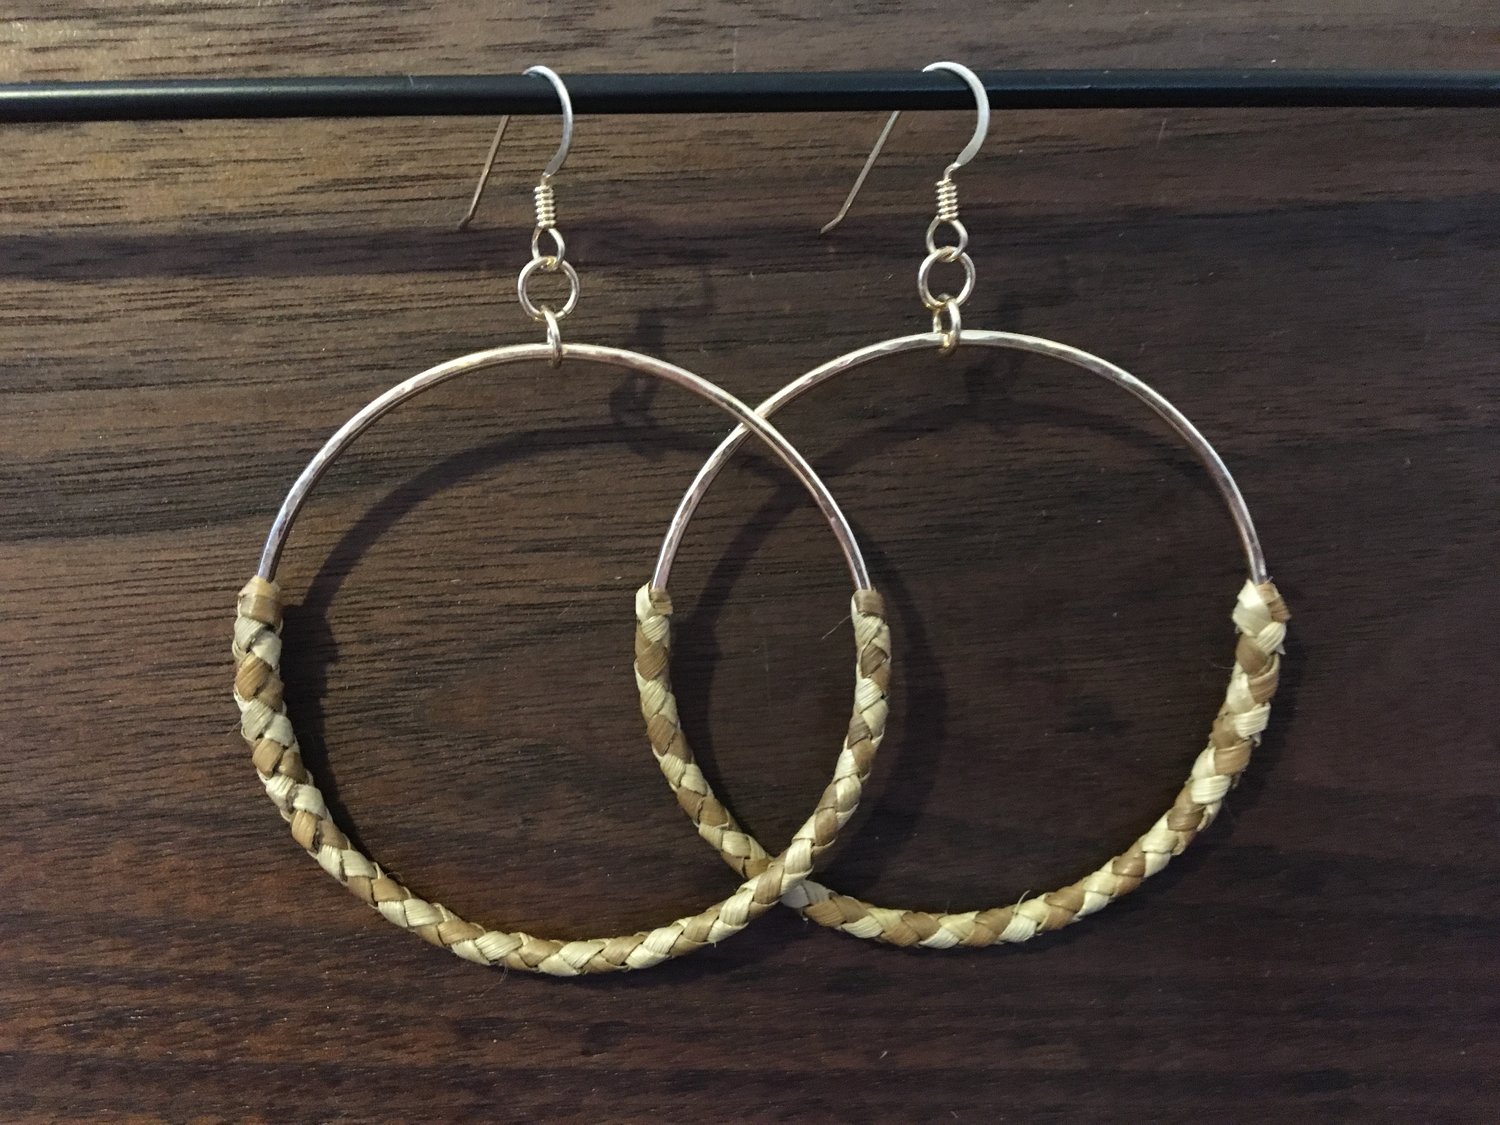 Lehua design earrings – KAHA on Maui